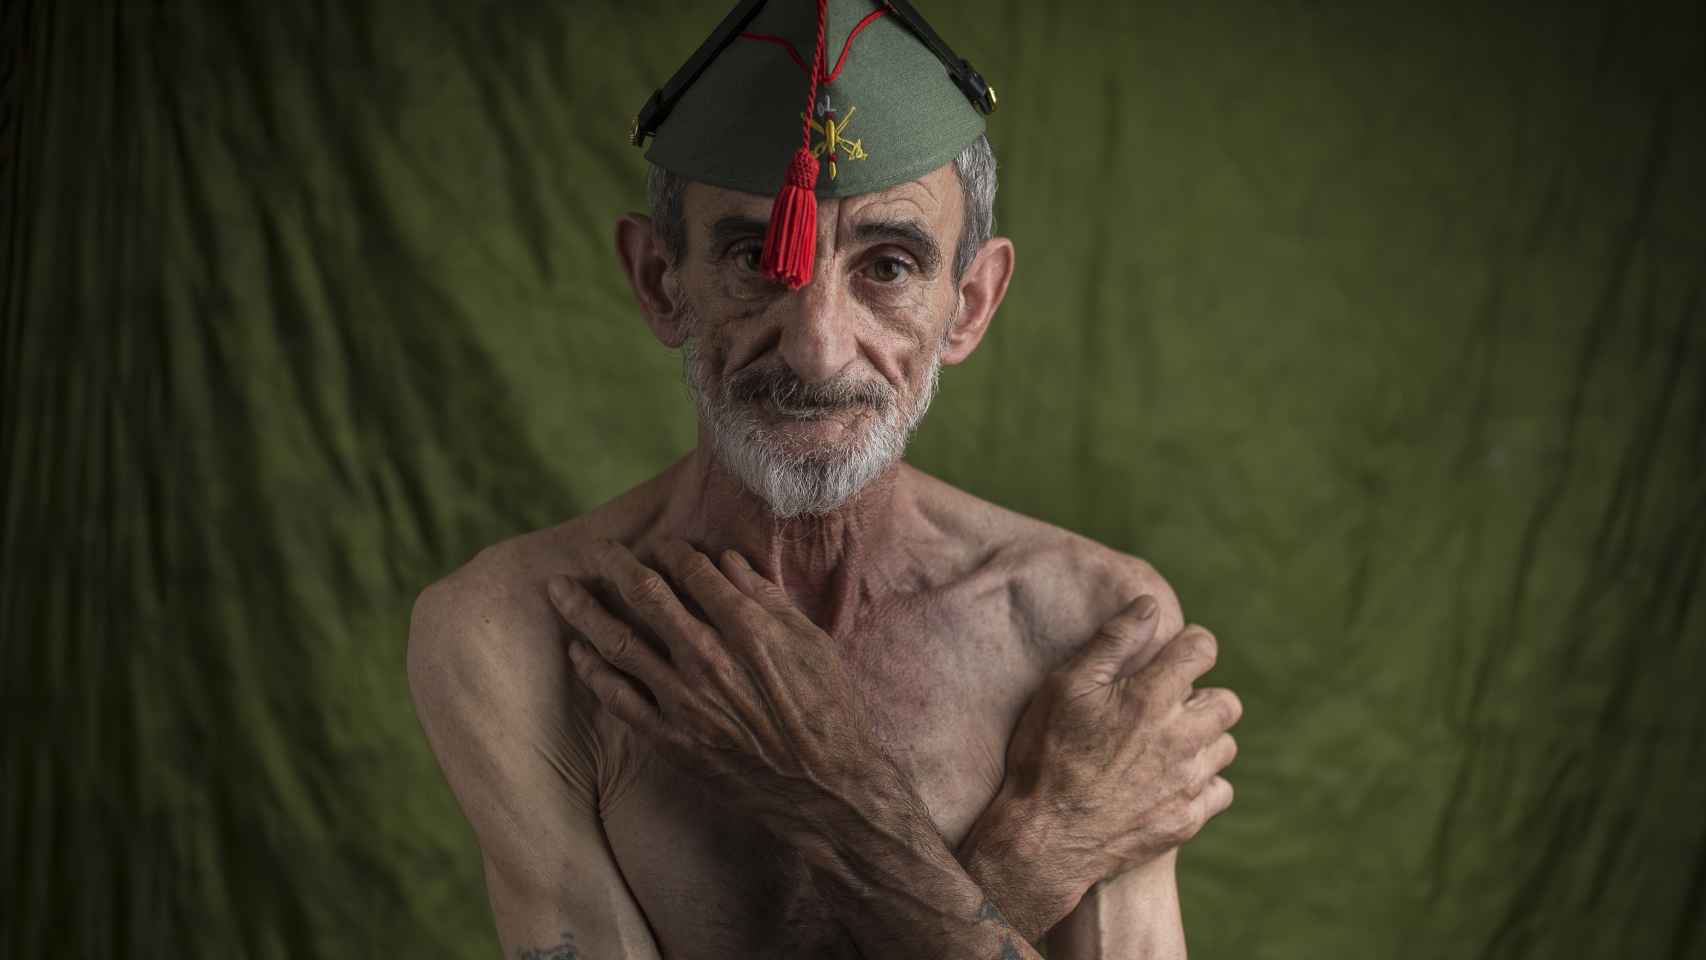 Los legionarios abandonados: José Antonio, enfermo, vive con 360 euros en un piso compartido